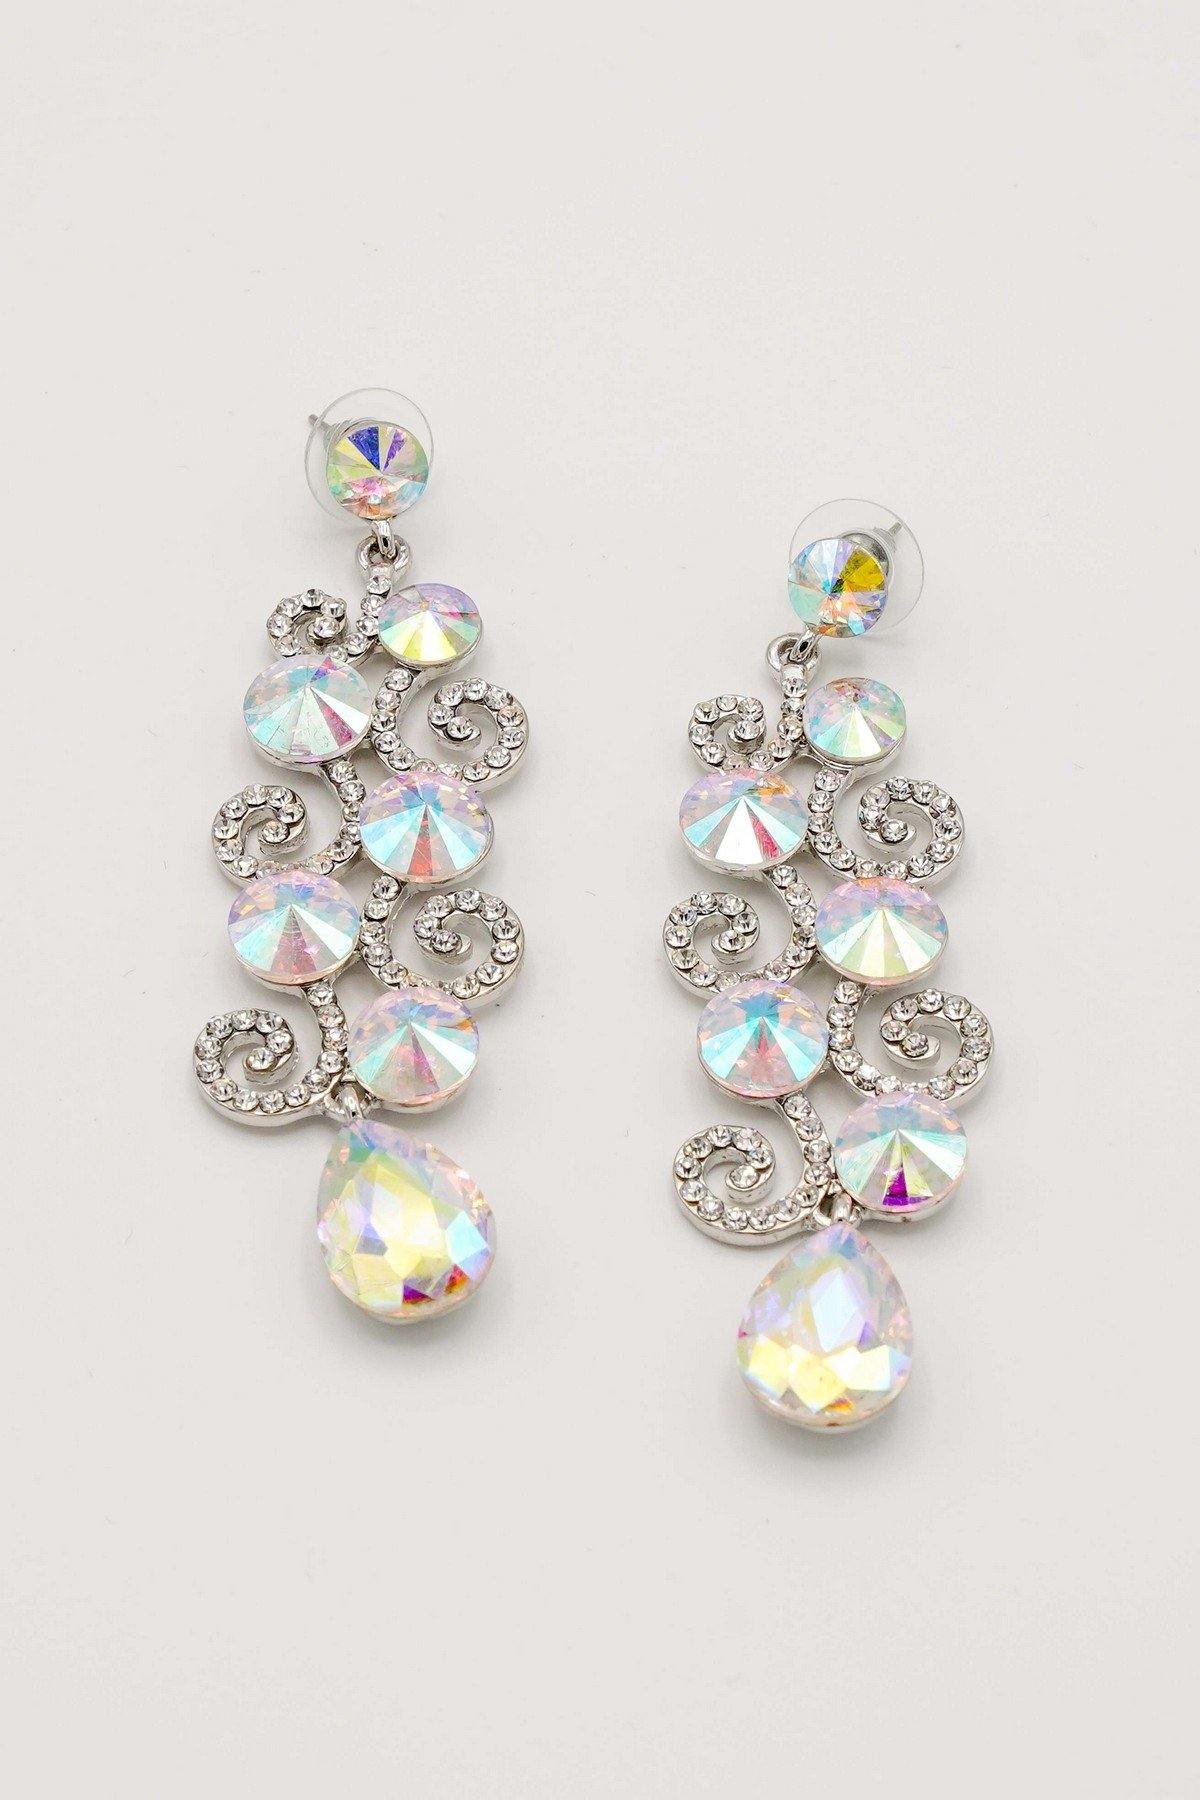 Chandelier Teardrop Bridal Rhinestone Earrings - The Dress Outlet